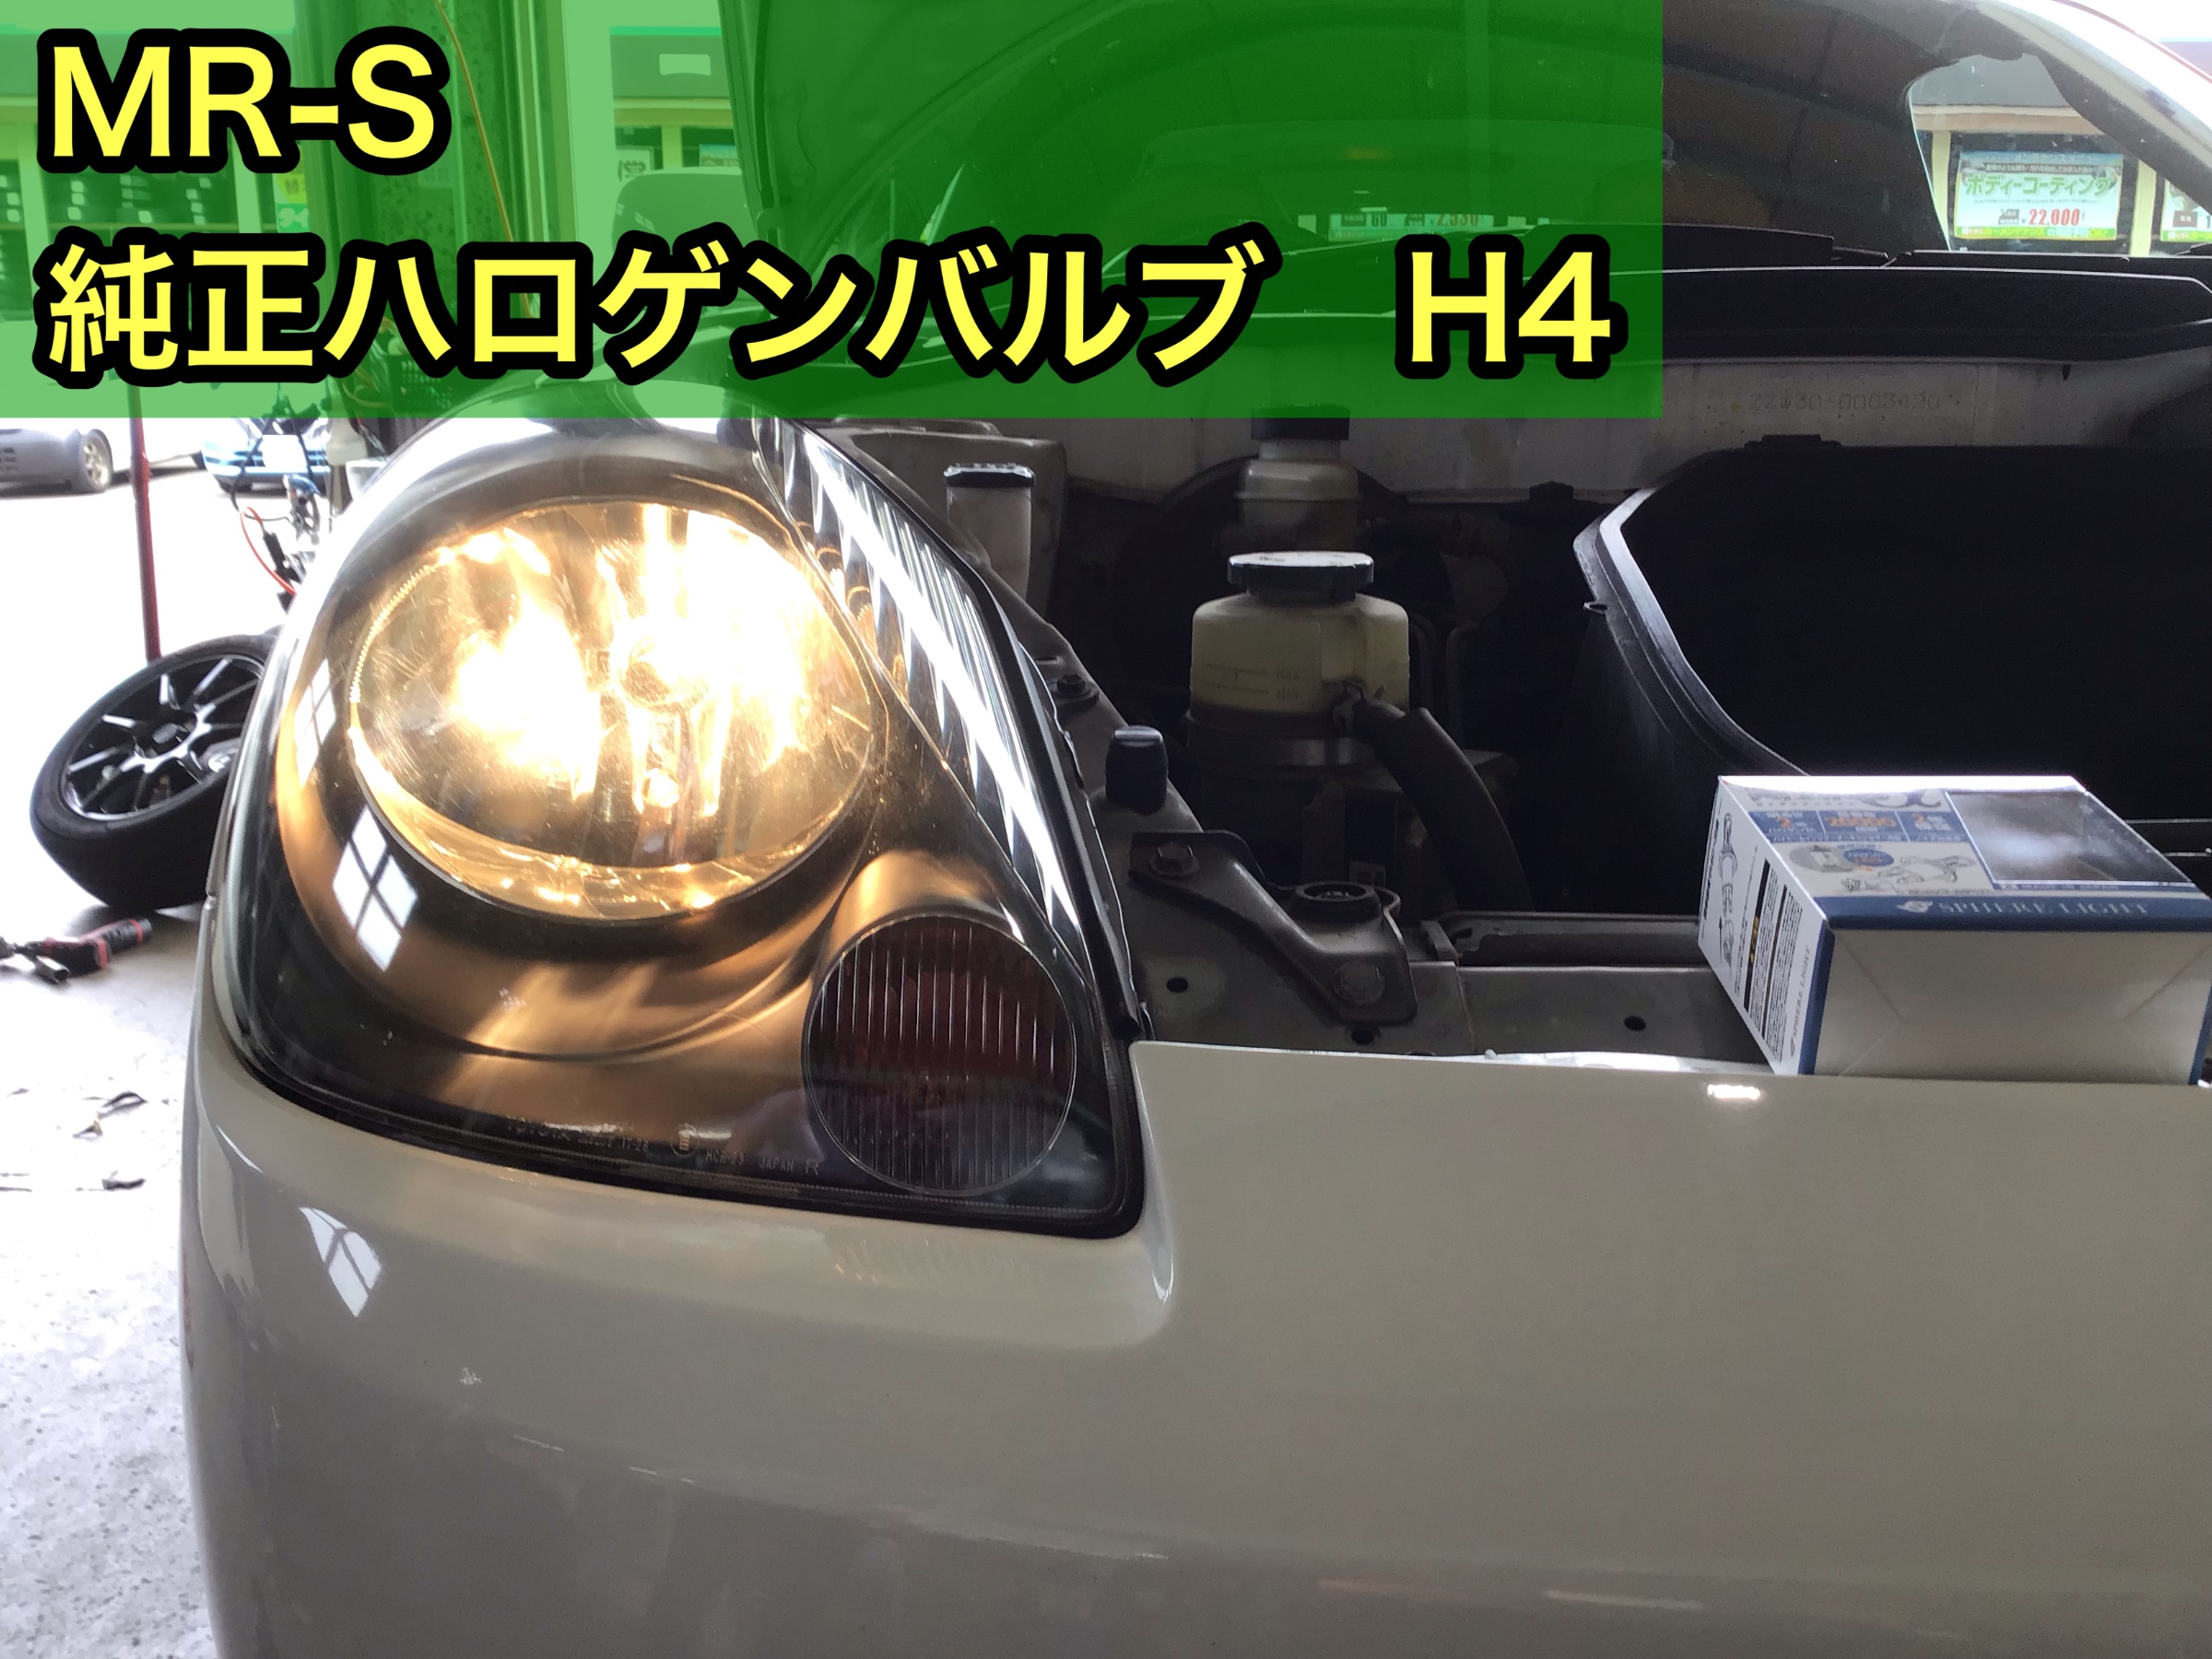 【新品未使用】トヨタ MR-S ヘッドランプユニット 左側単品 L トヨタ純正品